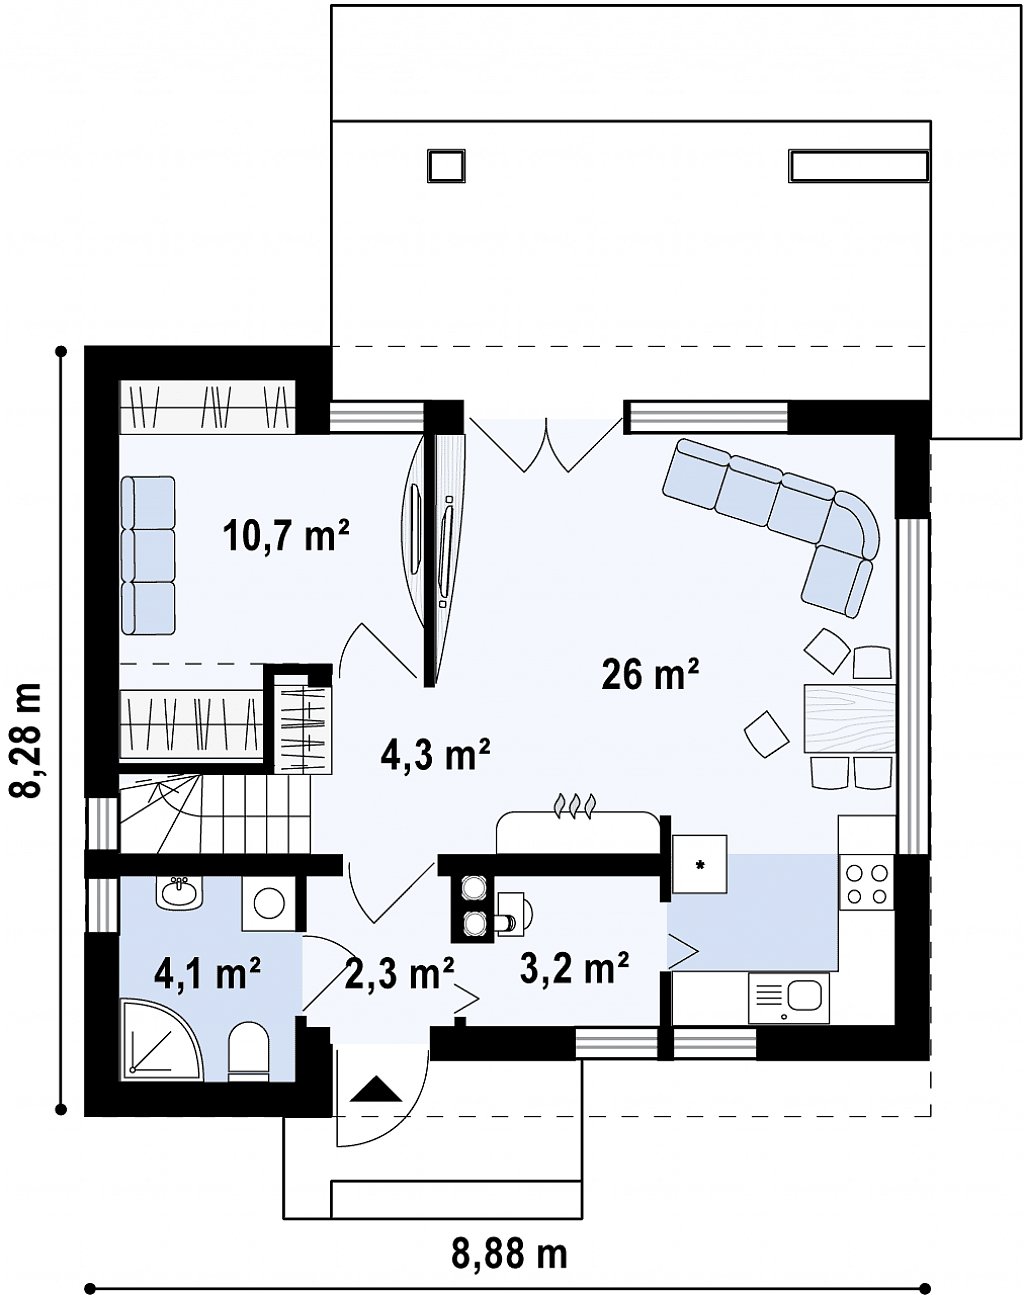 Компактный стильный дом простой формы с большой площадью остекления в дневной зоне. план помещений 1